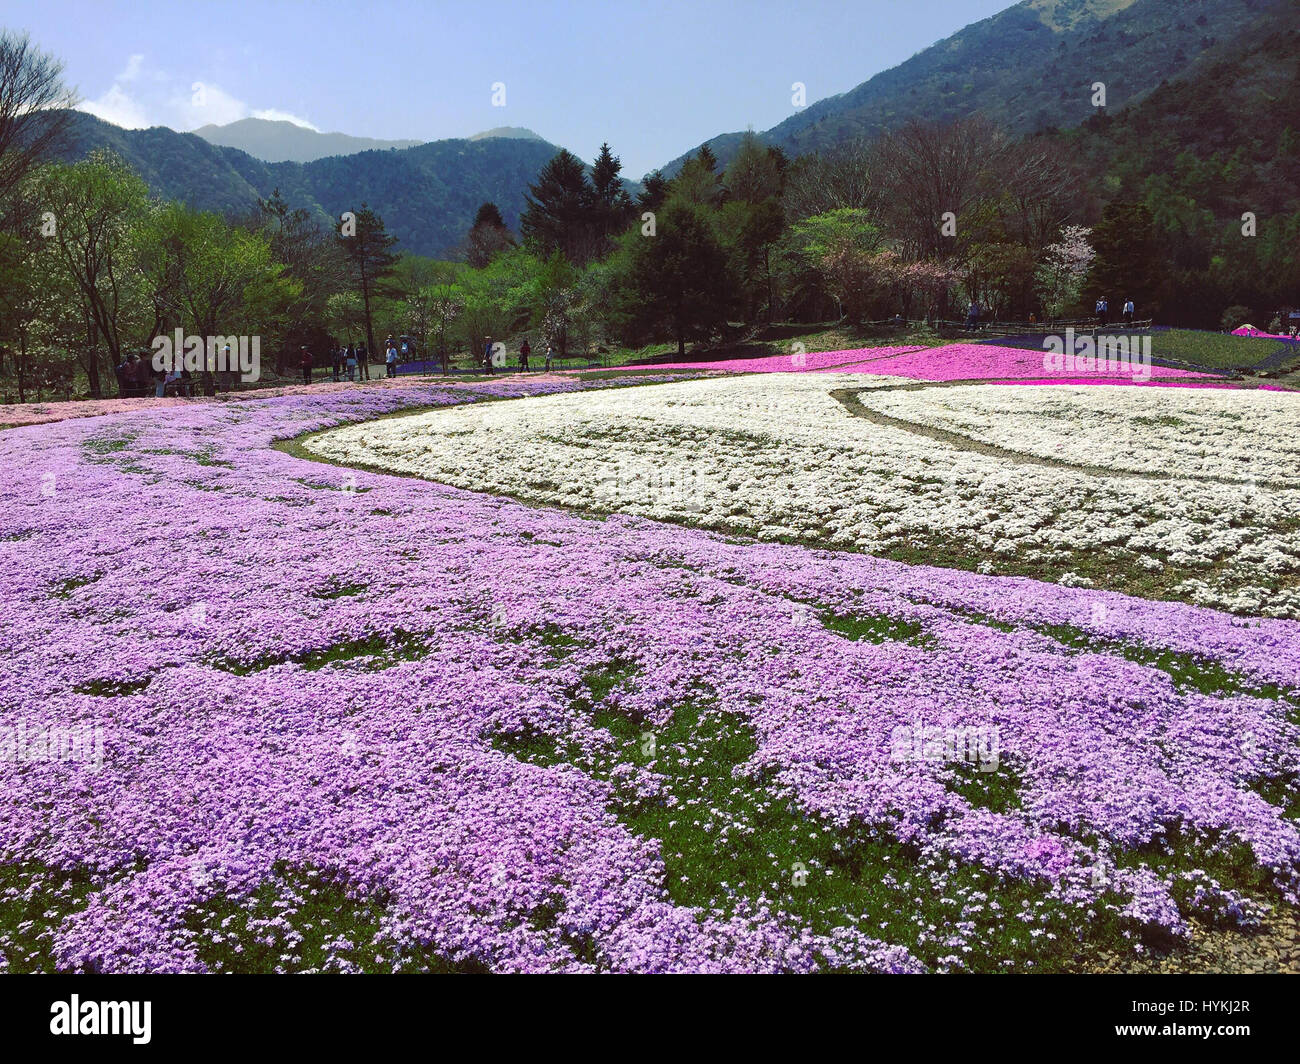 Insel HONSHU, JAPAN: MOUNT Fuji wurde erfasst sah aus wie eine reale Landschaftsmalerei, umgeben von schönen Blüte. Bilder zeigen rosa lila und weißen Blüten blühen auf spektakuläre Weise vor dem Hintergrund des majestätischen Mount Fuji. Beamter/Beamtin Hanson Mao (36) verbrachten fünf Tage in Japan diese atemberaubende Frühling Szenen im Shibazkura Garten am Fuße des Mount Fuji auf der Insel Honshu, Japan einzufangen. Stockfoto